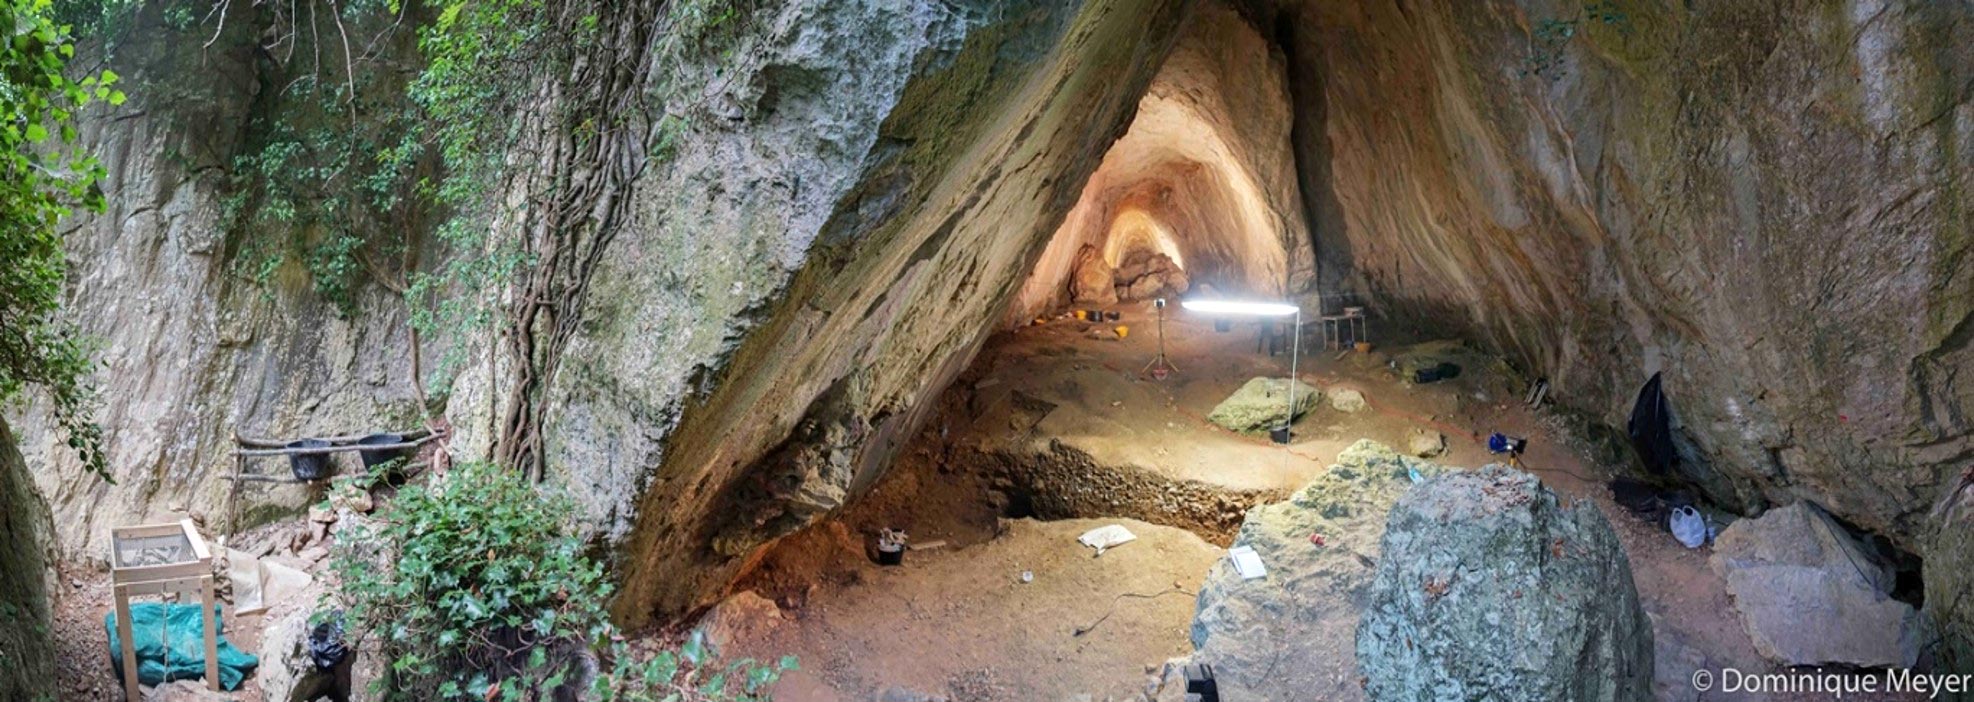 意大利洞穴发现的欧洲最早女婴墓葬和饰品揭示中石器时代社会结构